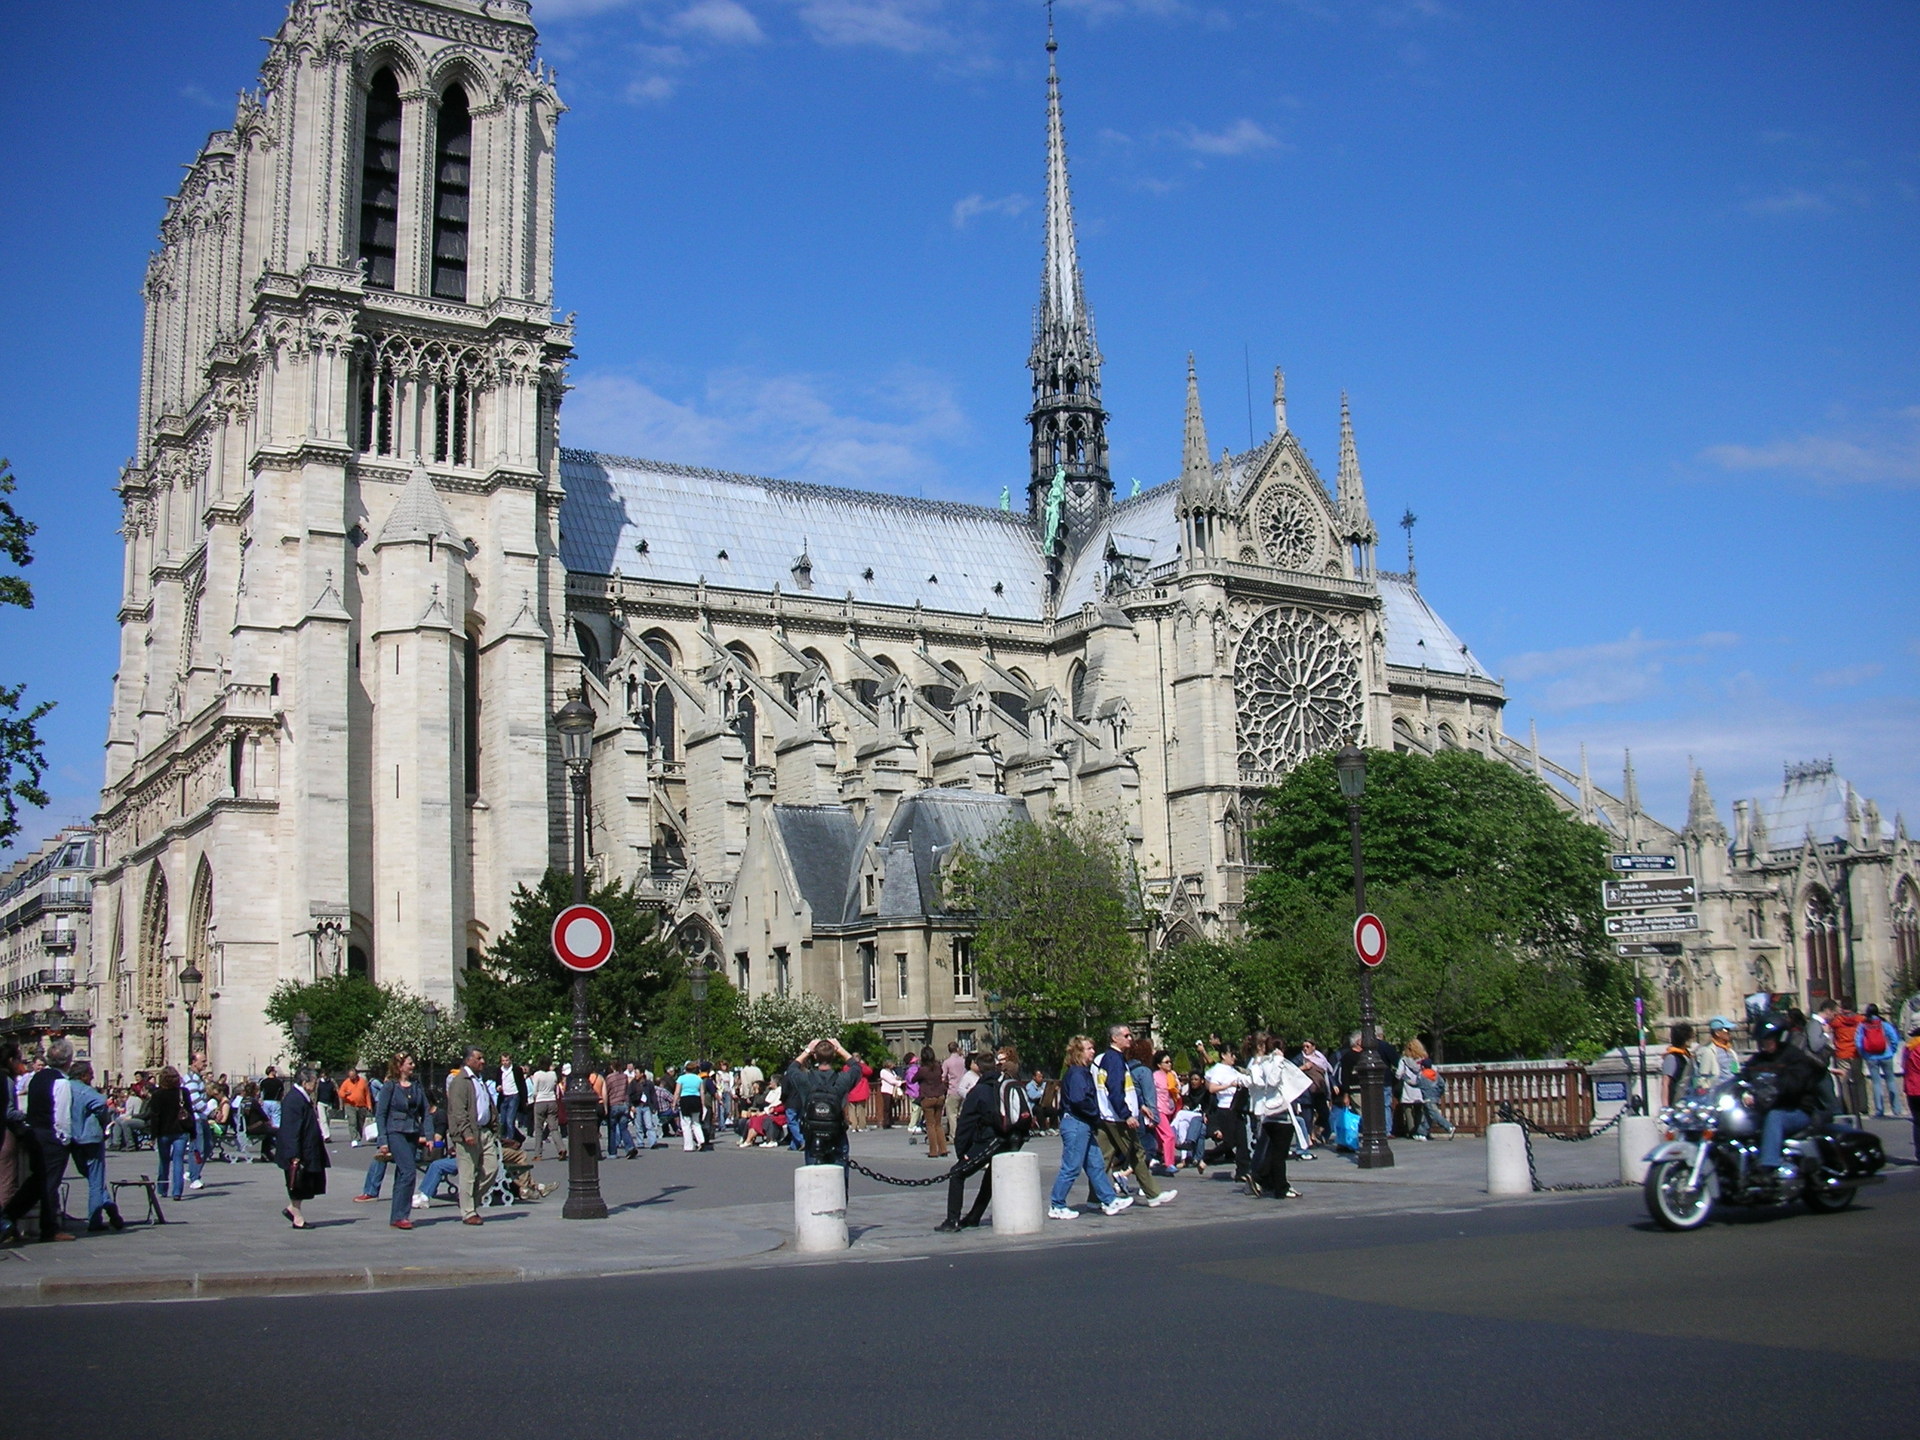 Notre Dame in Paris, France - France Photo (541877) - Fanpop